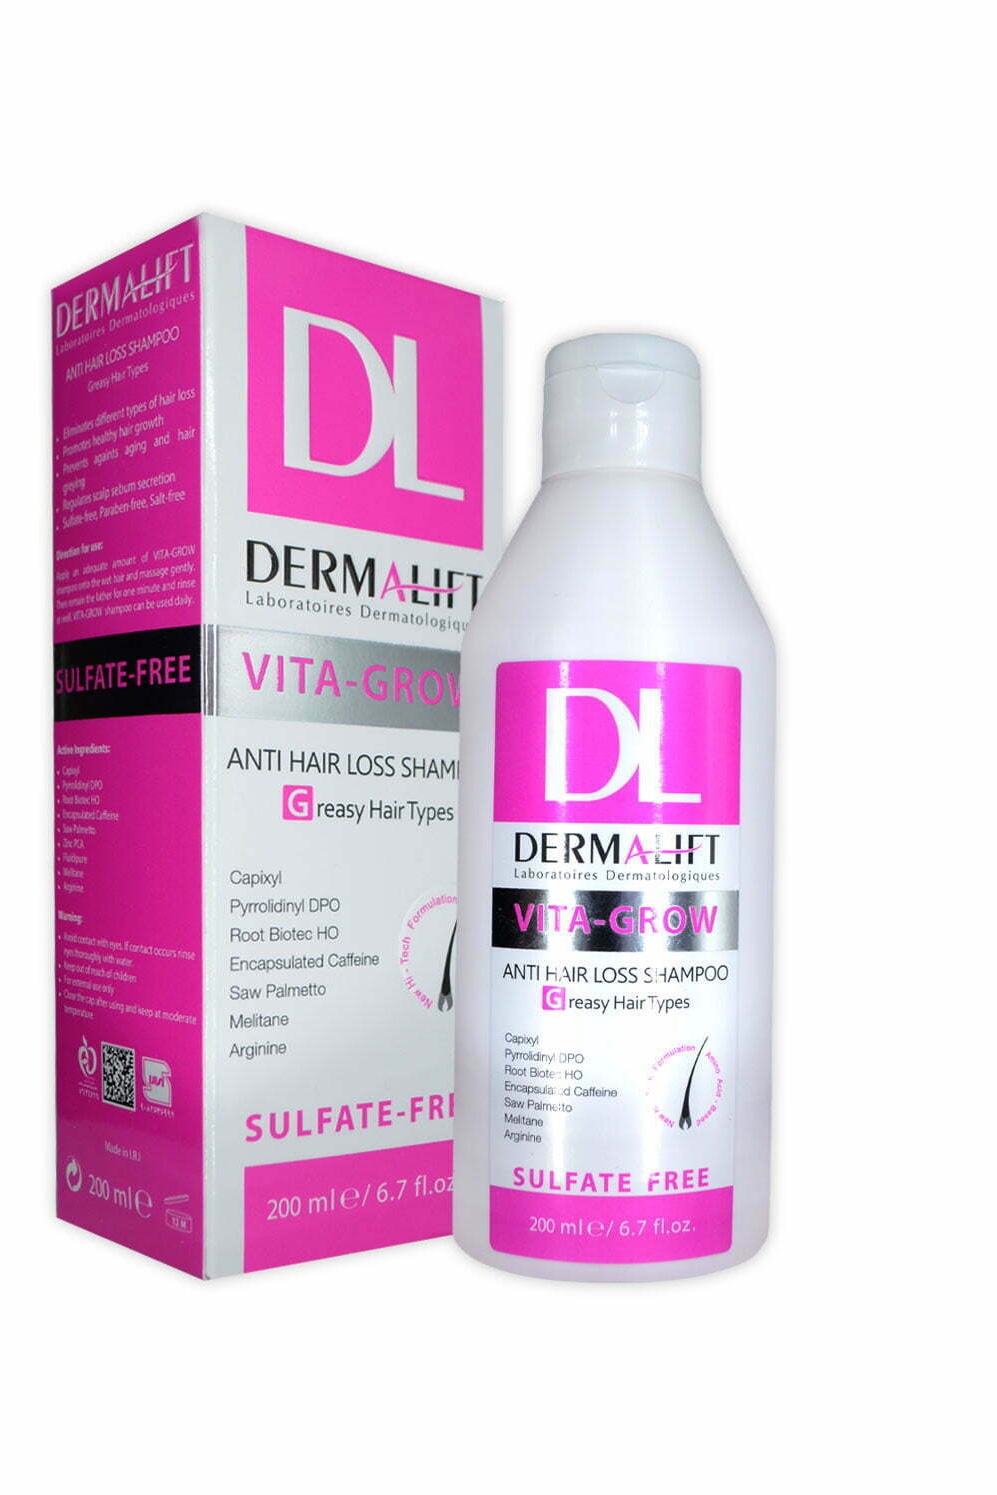 شامپو ضد ریزش و تقویت کننده موهای چرب  ویتا-گرو درمالیفت Dermalift Vita-Grow